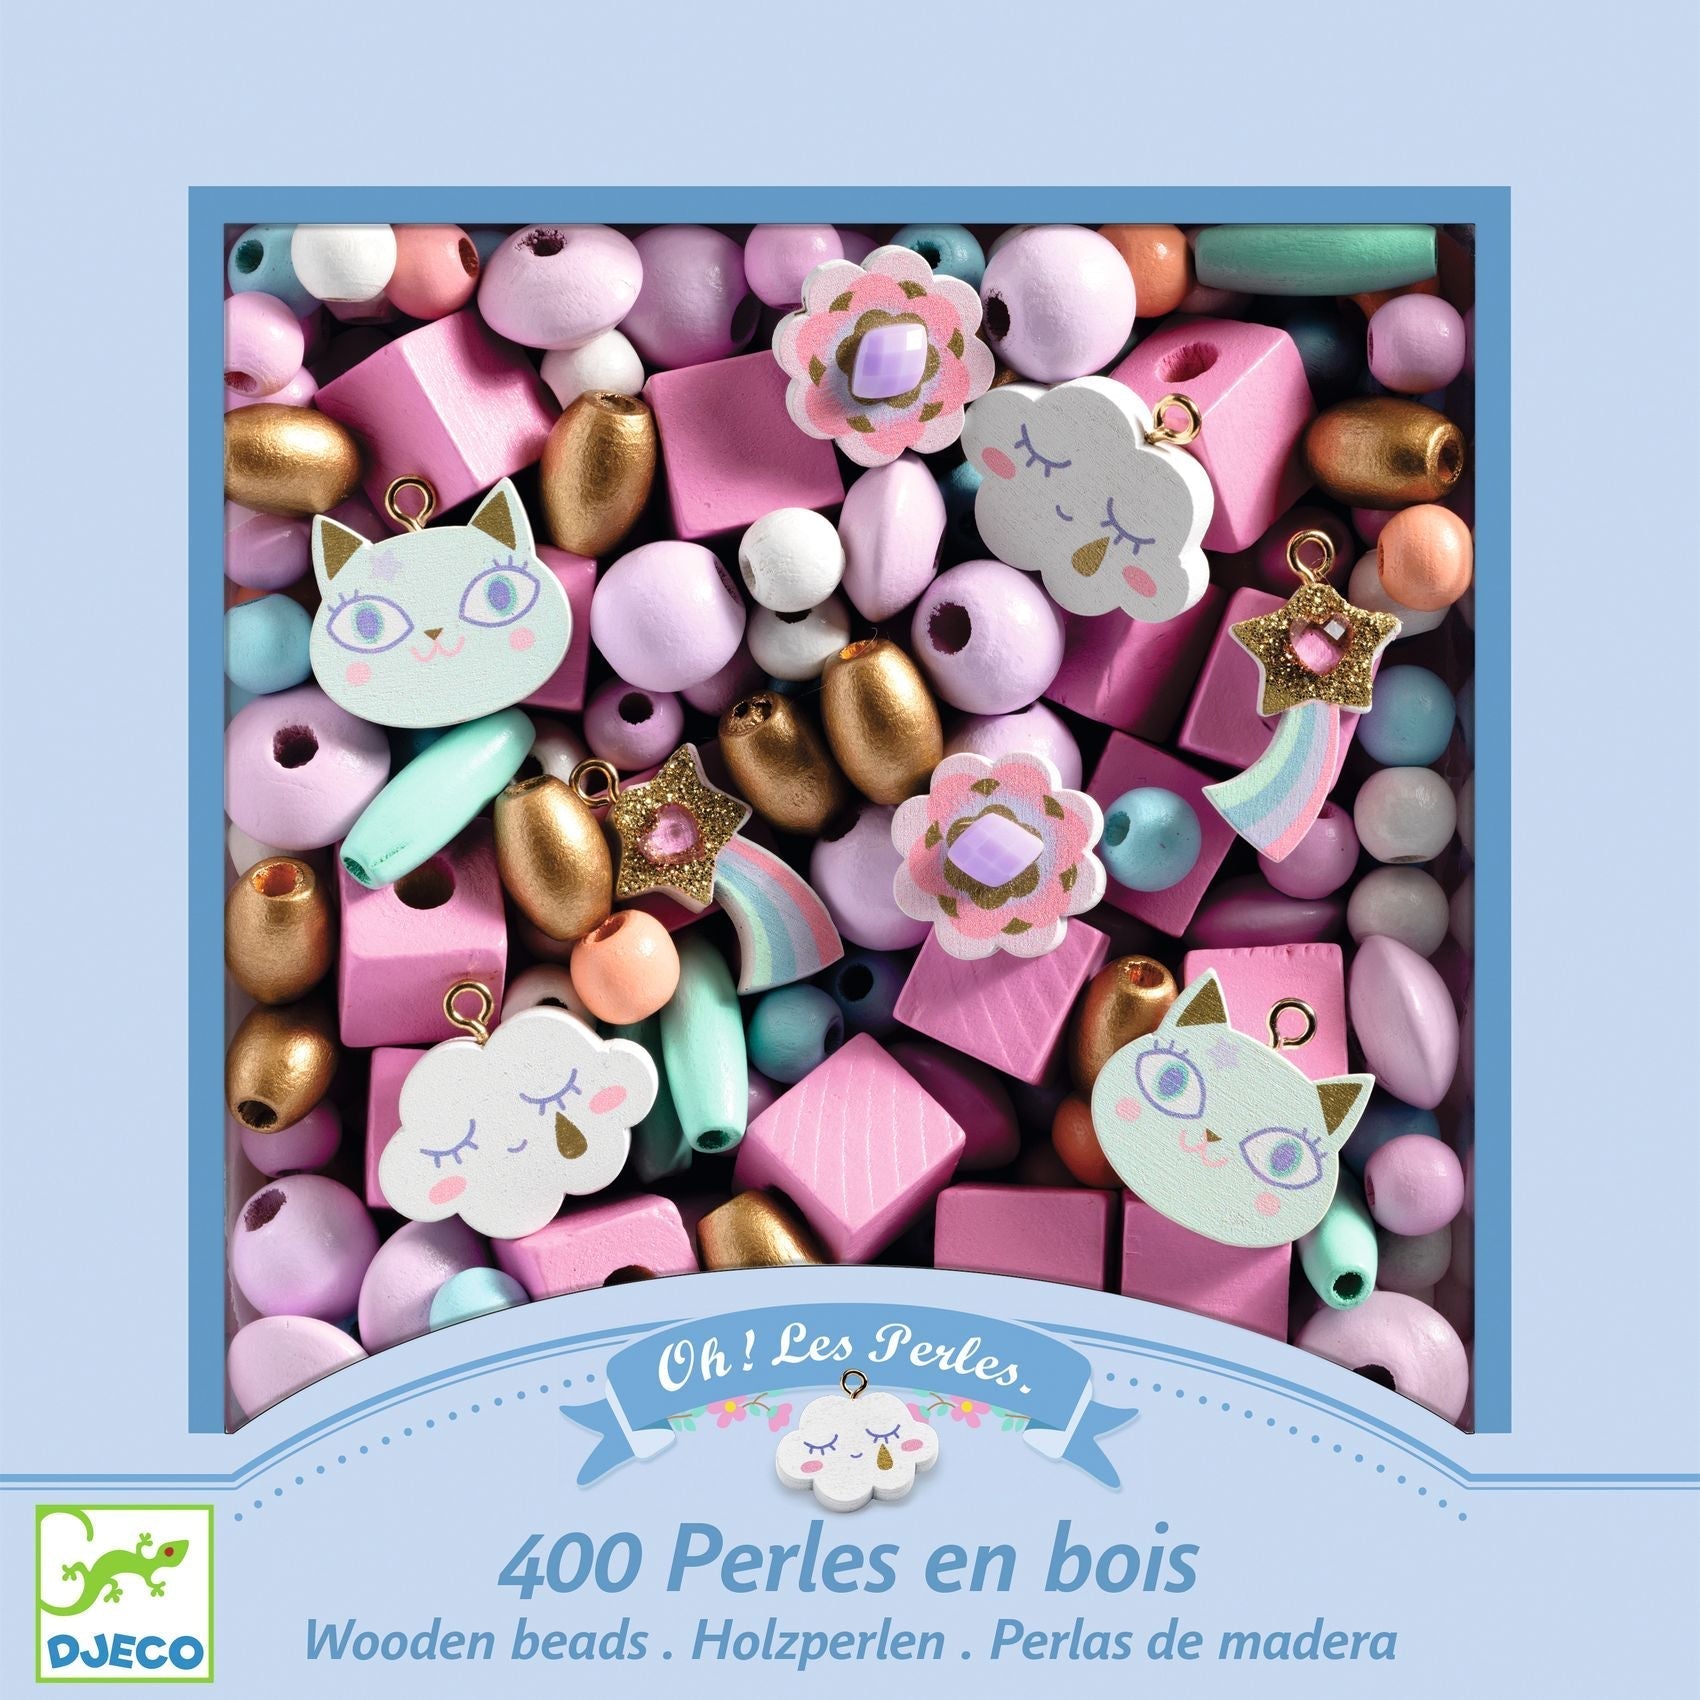 Perles en bois | Arc en ciel-Djeco-Super Châtaigne-Création & Fabrication : Product type